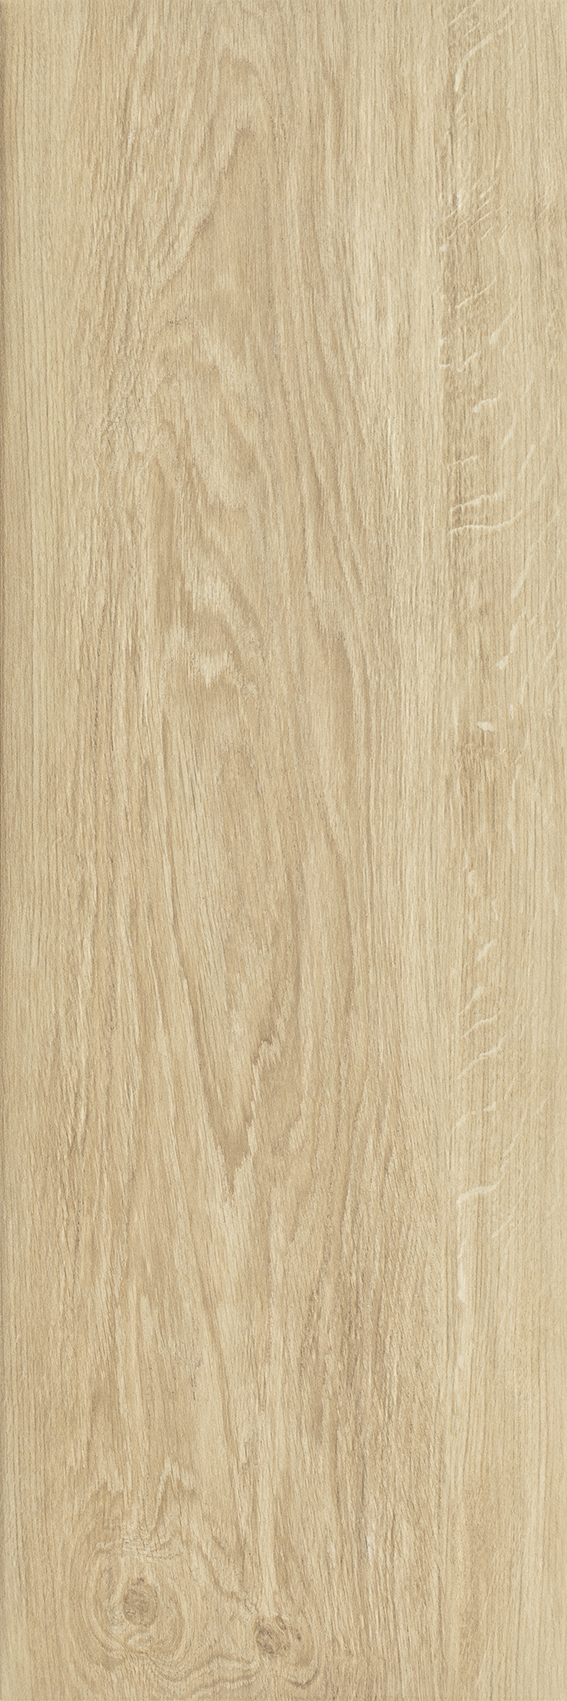 Dlažba Wood Basic Beige 20x60